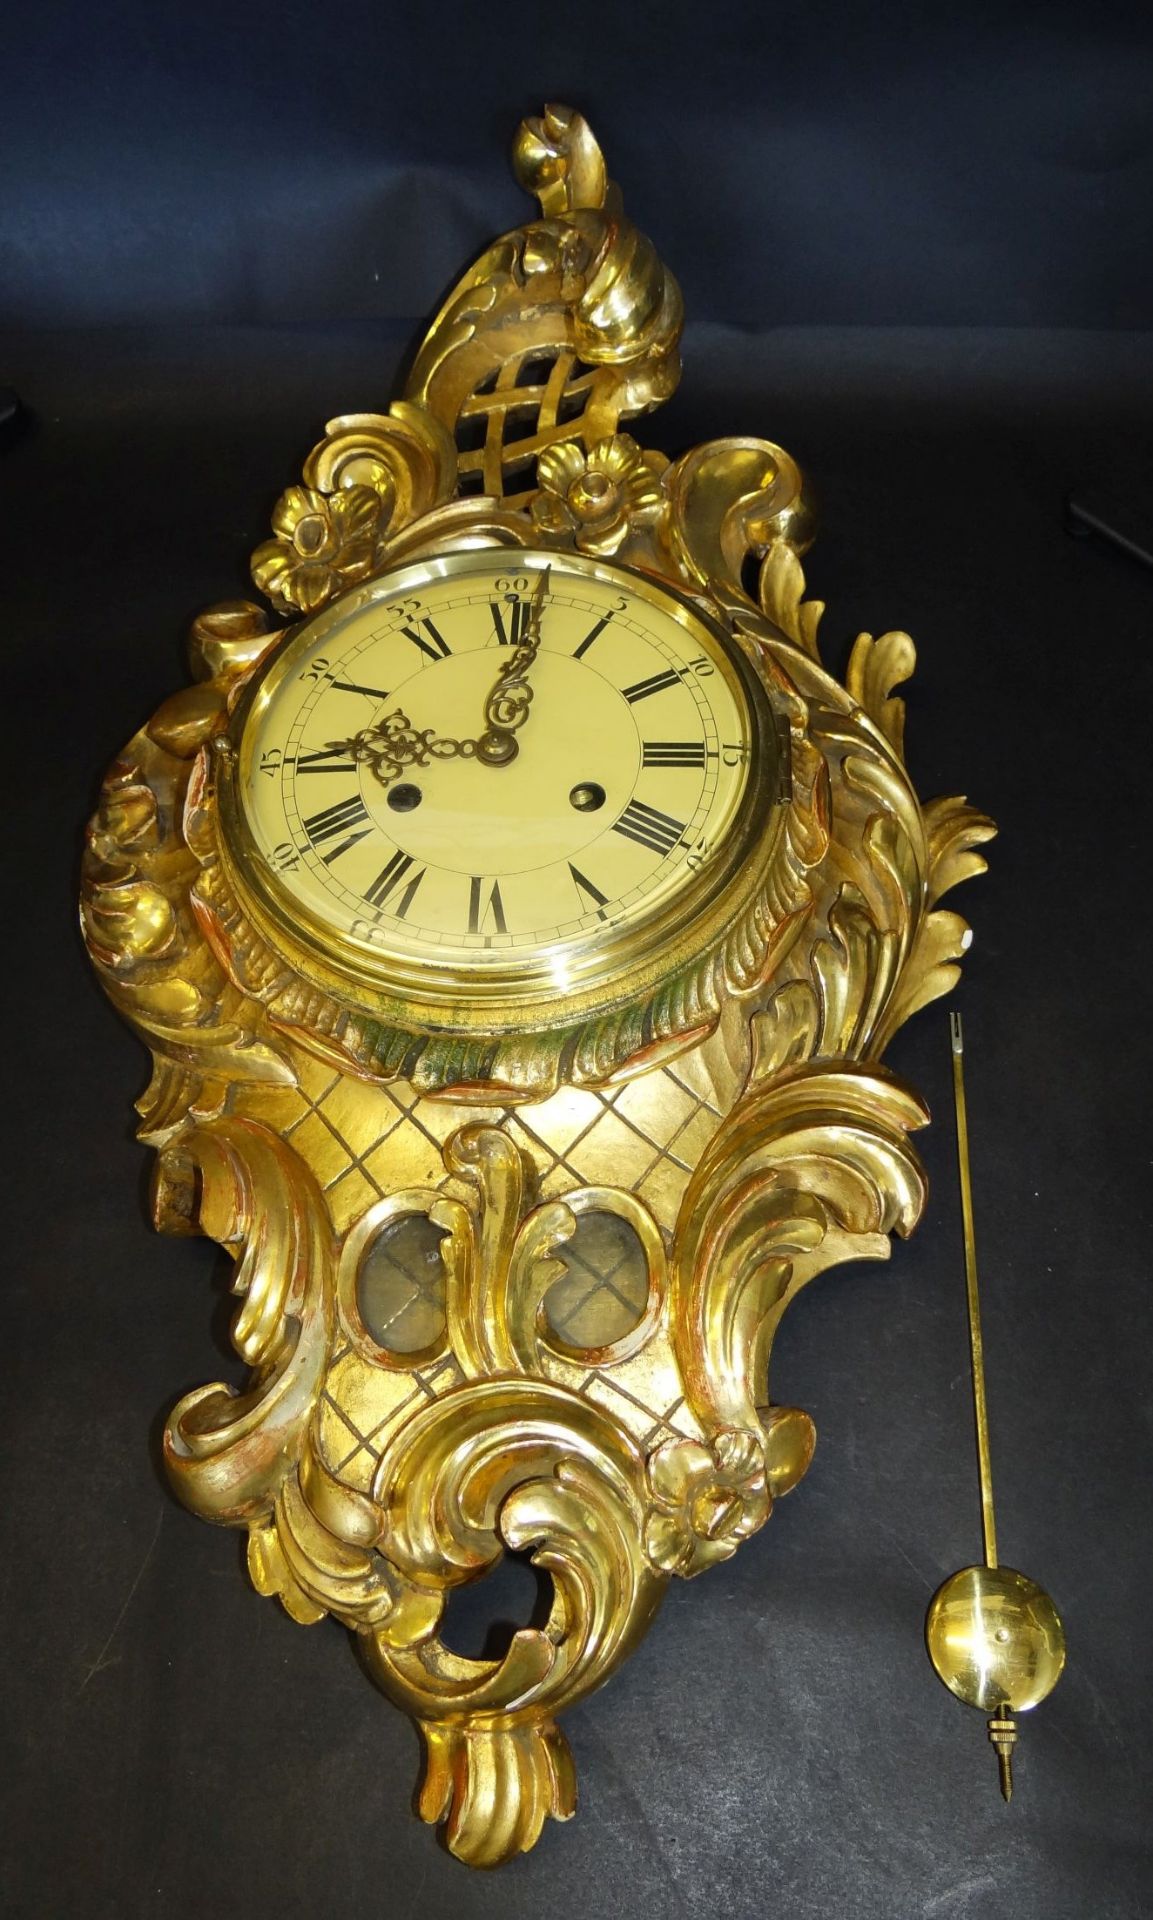 gr. Kartell-Uhr, Holz vergoldet, , H-62 cm, B-32 cm, guter Zustand, leider falsches , zu langes